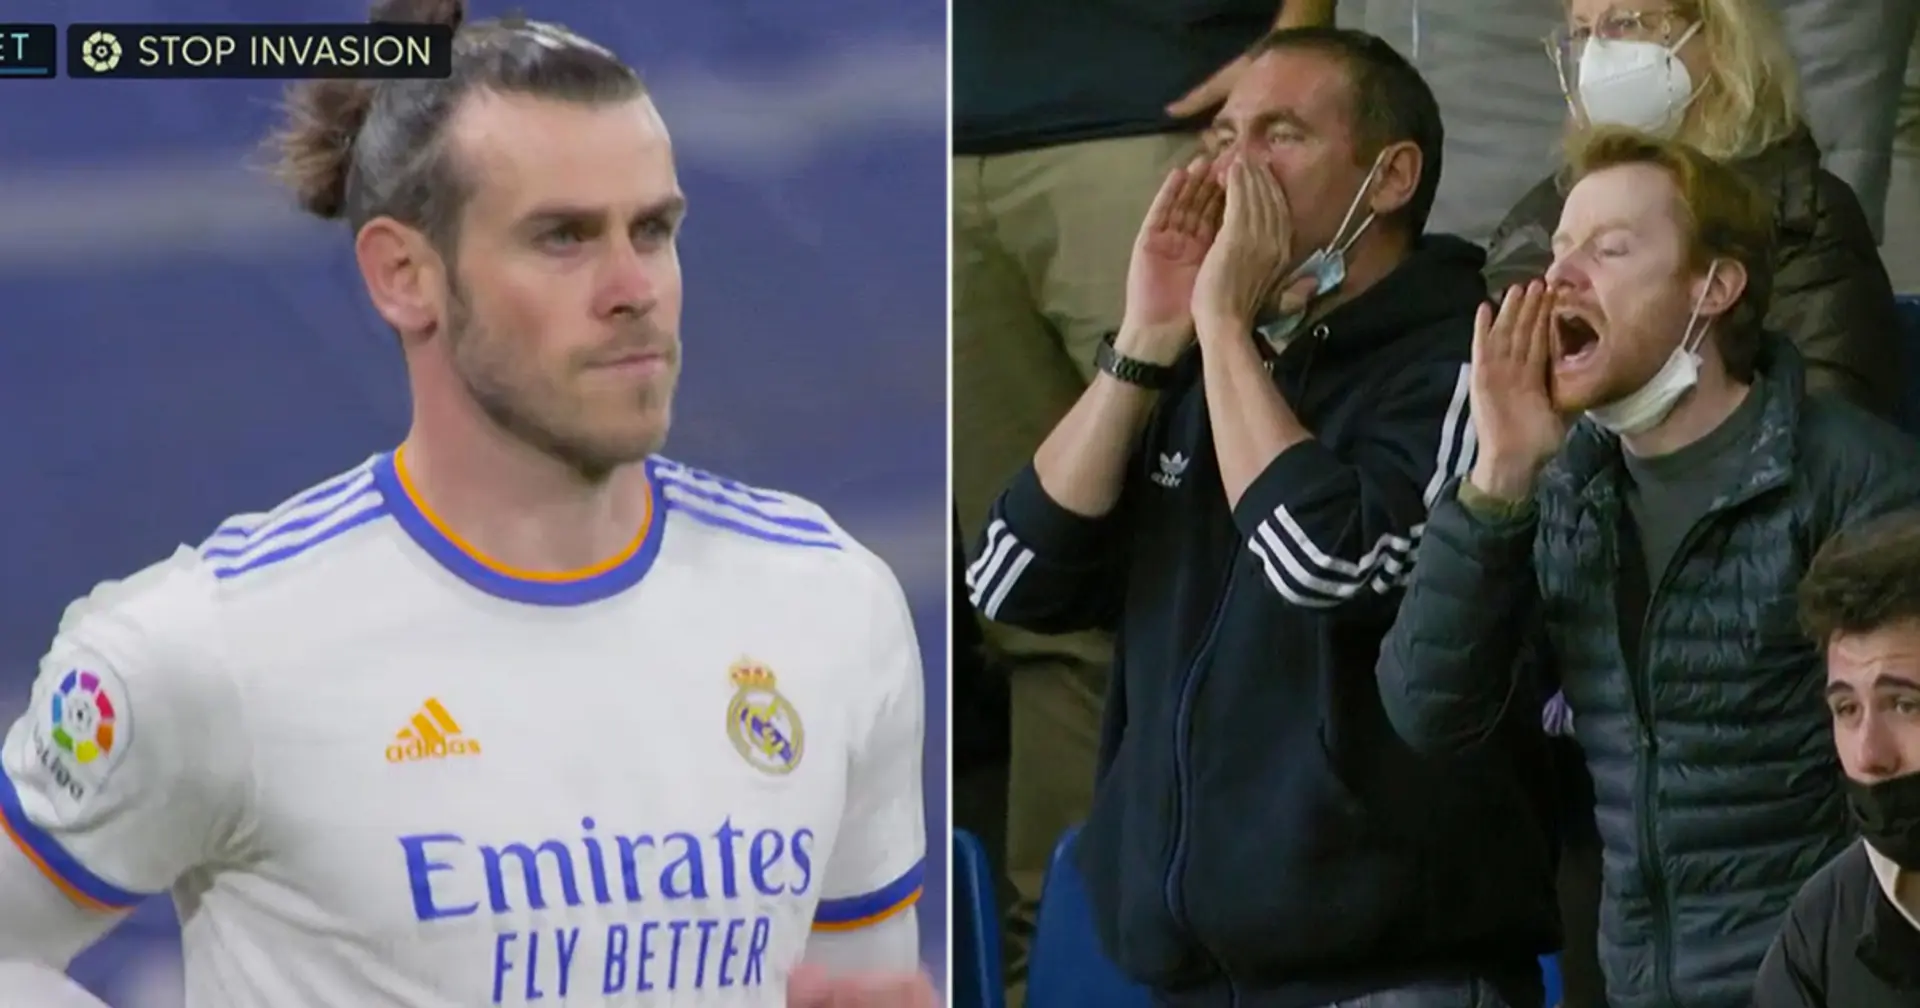 La reacción de Bale a los fuertes abucheos de la afición del Real Madrid captada por las cámaras